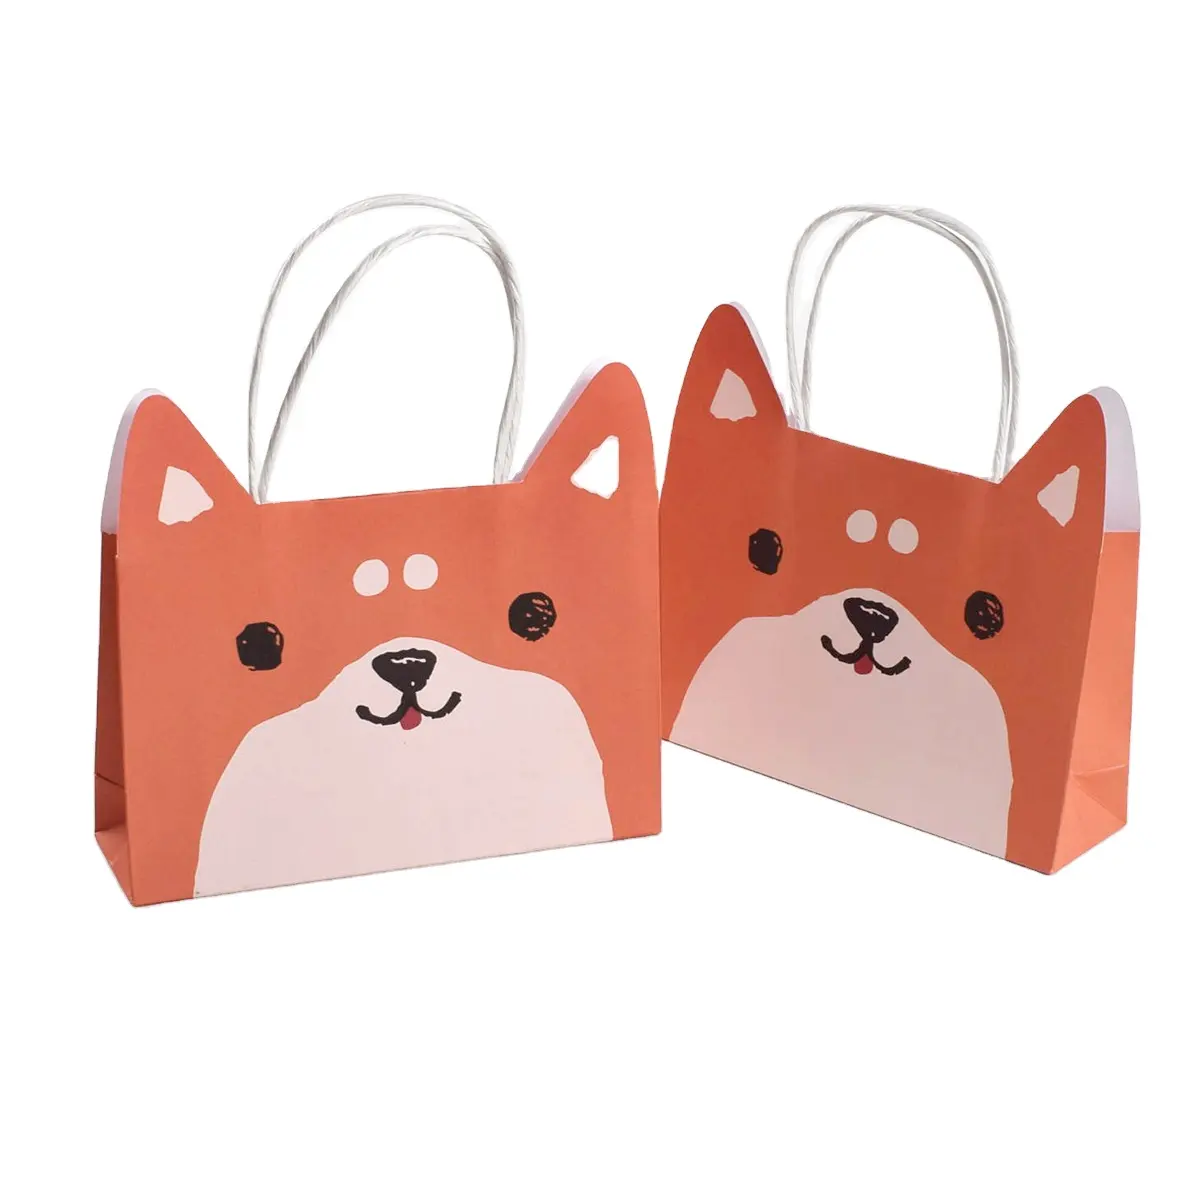 Usti ustom-bolsa de papel con mango de papel para enjuagar, bolsa pequeña con forma de dibujos animados de animales, para regalo de joyería